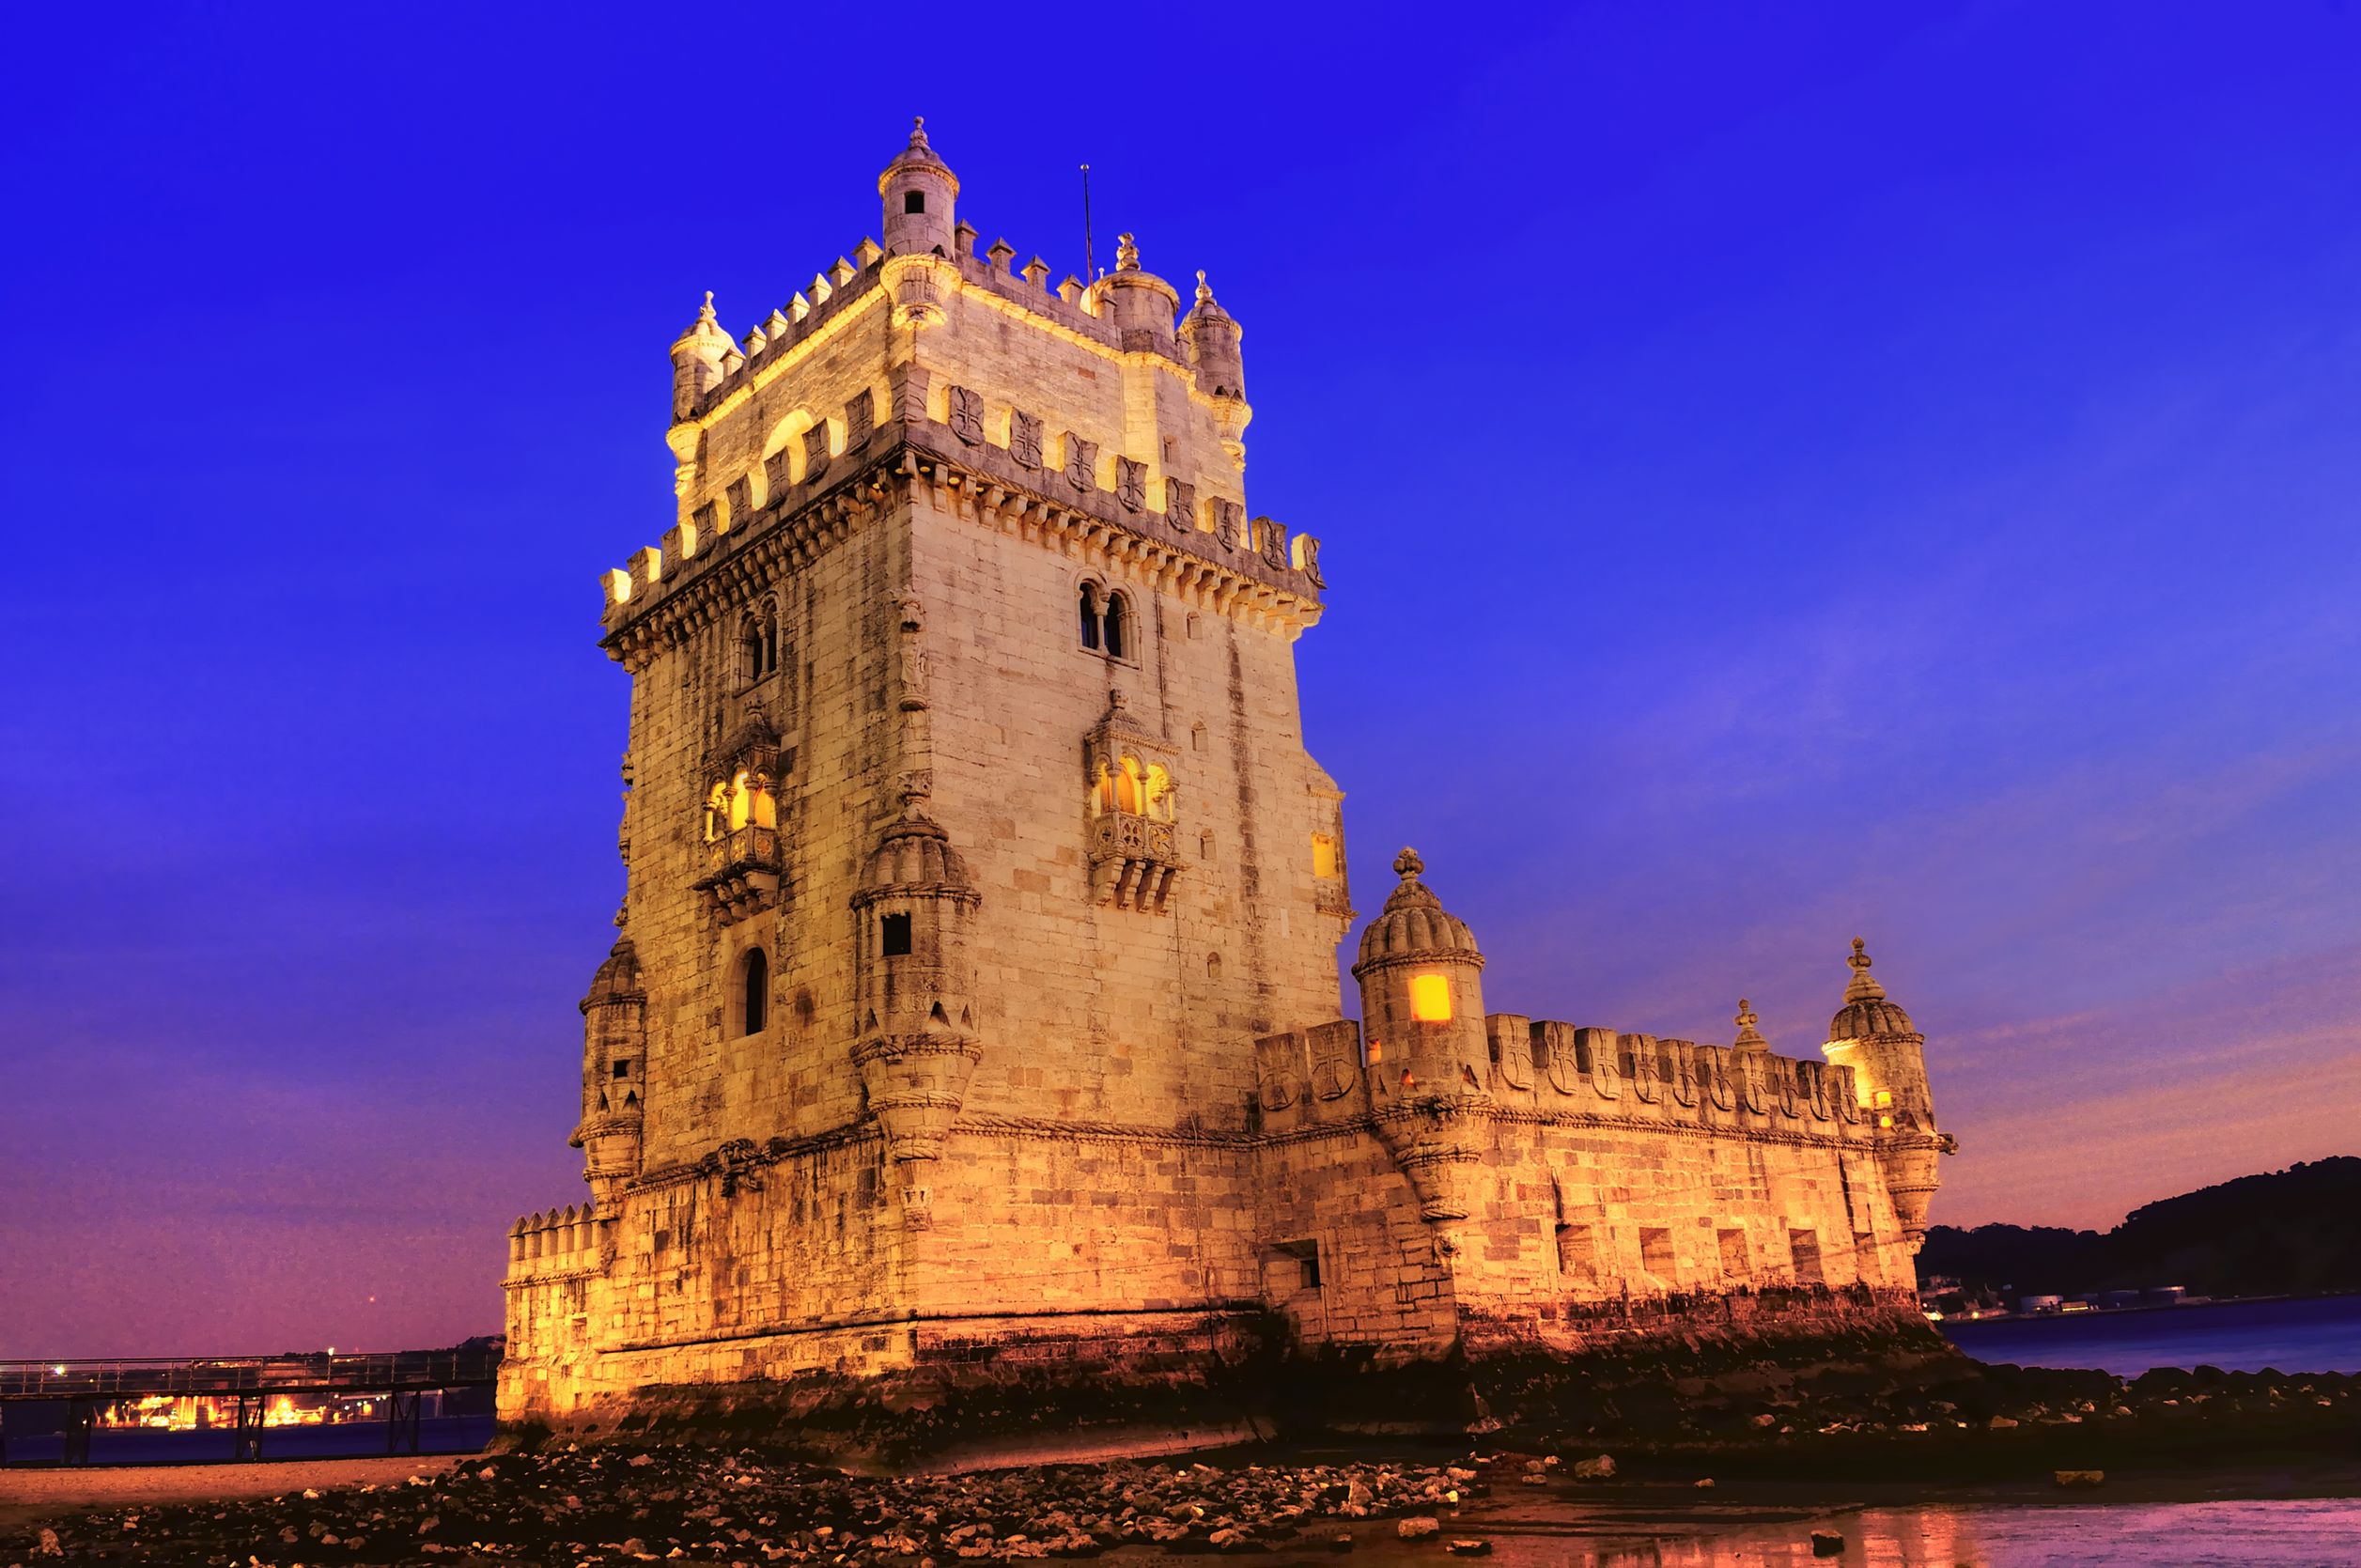 Belem tower in Lisbon